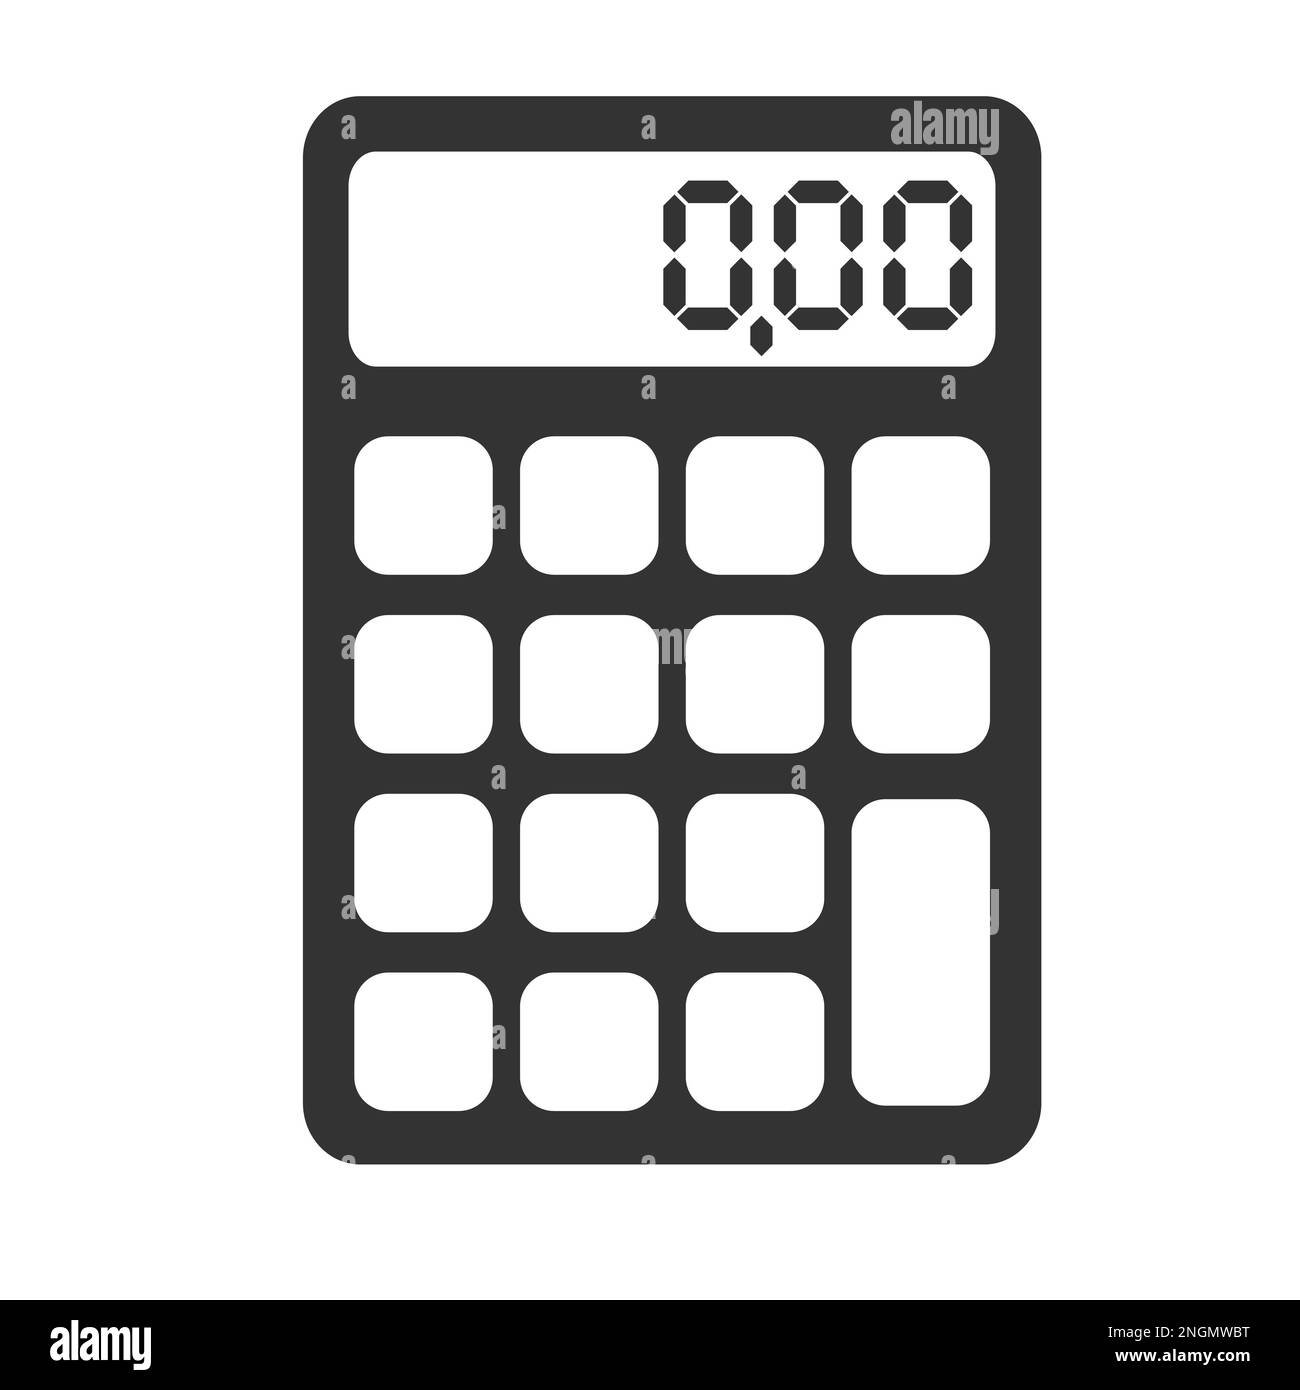 Einfache flache schwarze und weiße Taschenrechner Symbol Vektor illustration Stockfoto